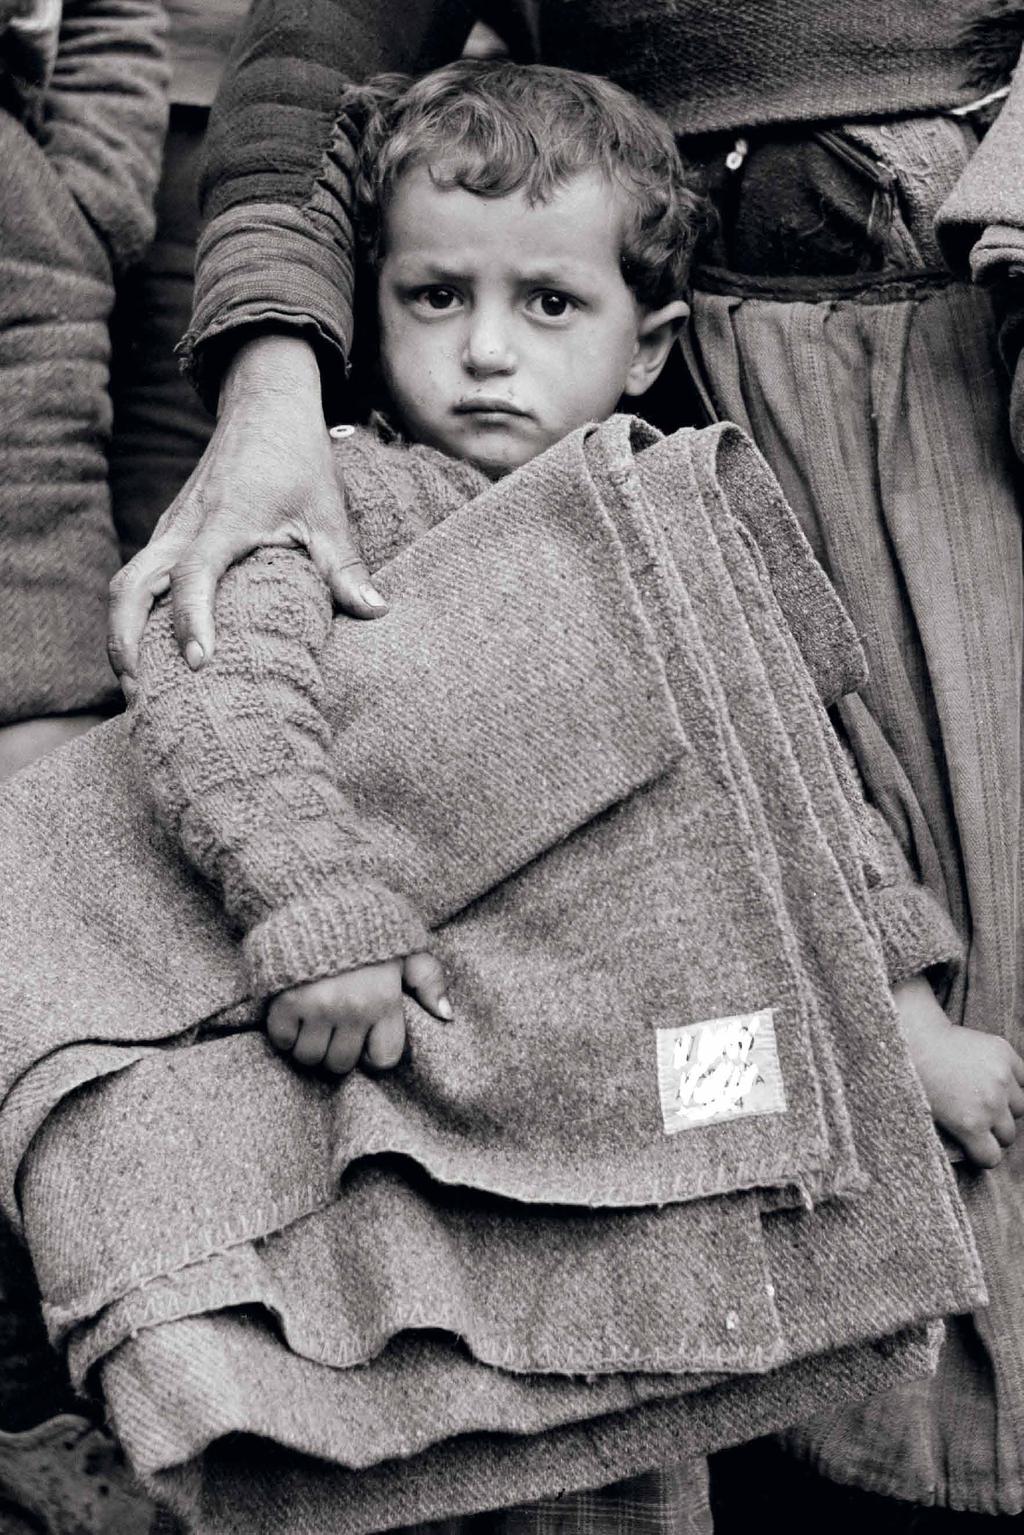 Ein Kind des Zweiten Weltkriegs UNICEF beginnt mit Milch, Fett und Lebertran: Die Vereinten Nationen rufen 1946 ihr hilfswerk ins Leben, um unter-ernährte und kranke im zerstörten Nachkriegseuropa